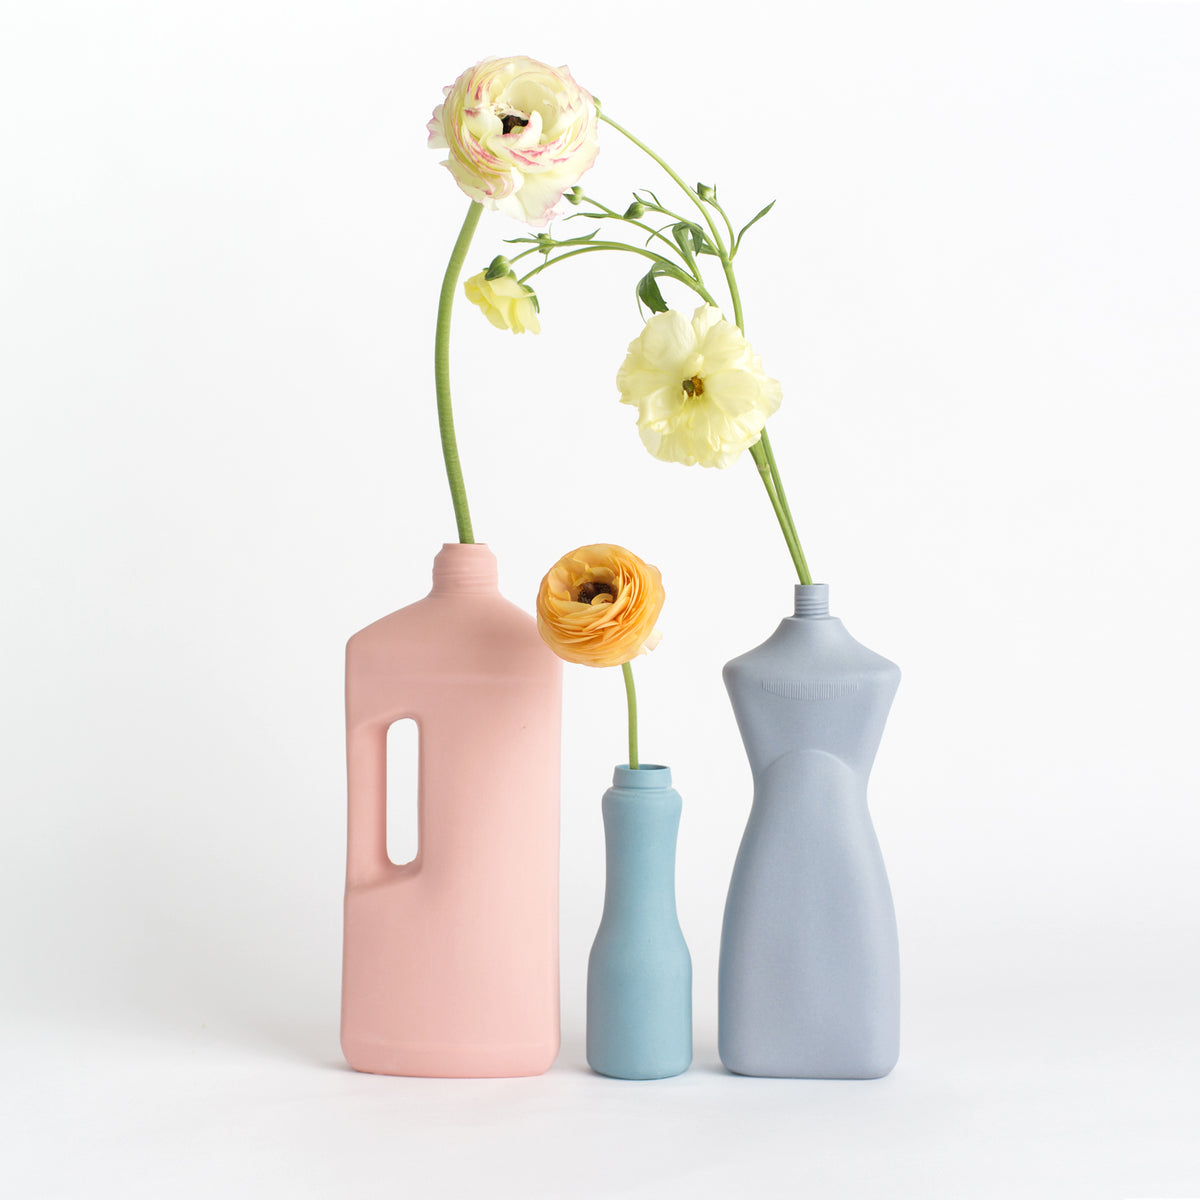 Porzellan-Vase #3 von Foekje Fleur bei Wilhelm die 3.